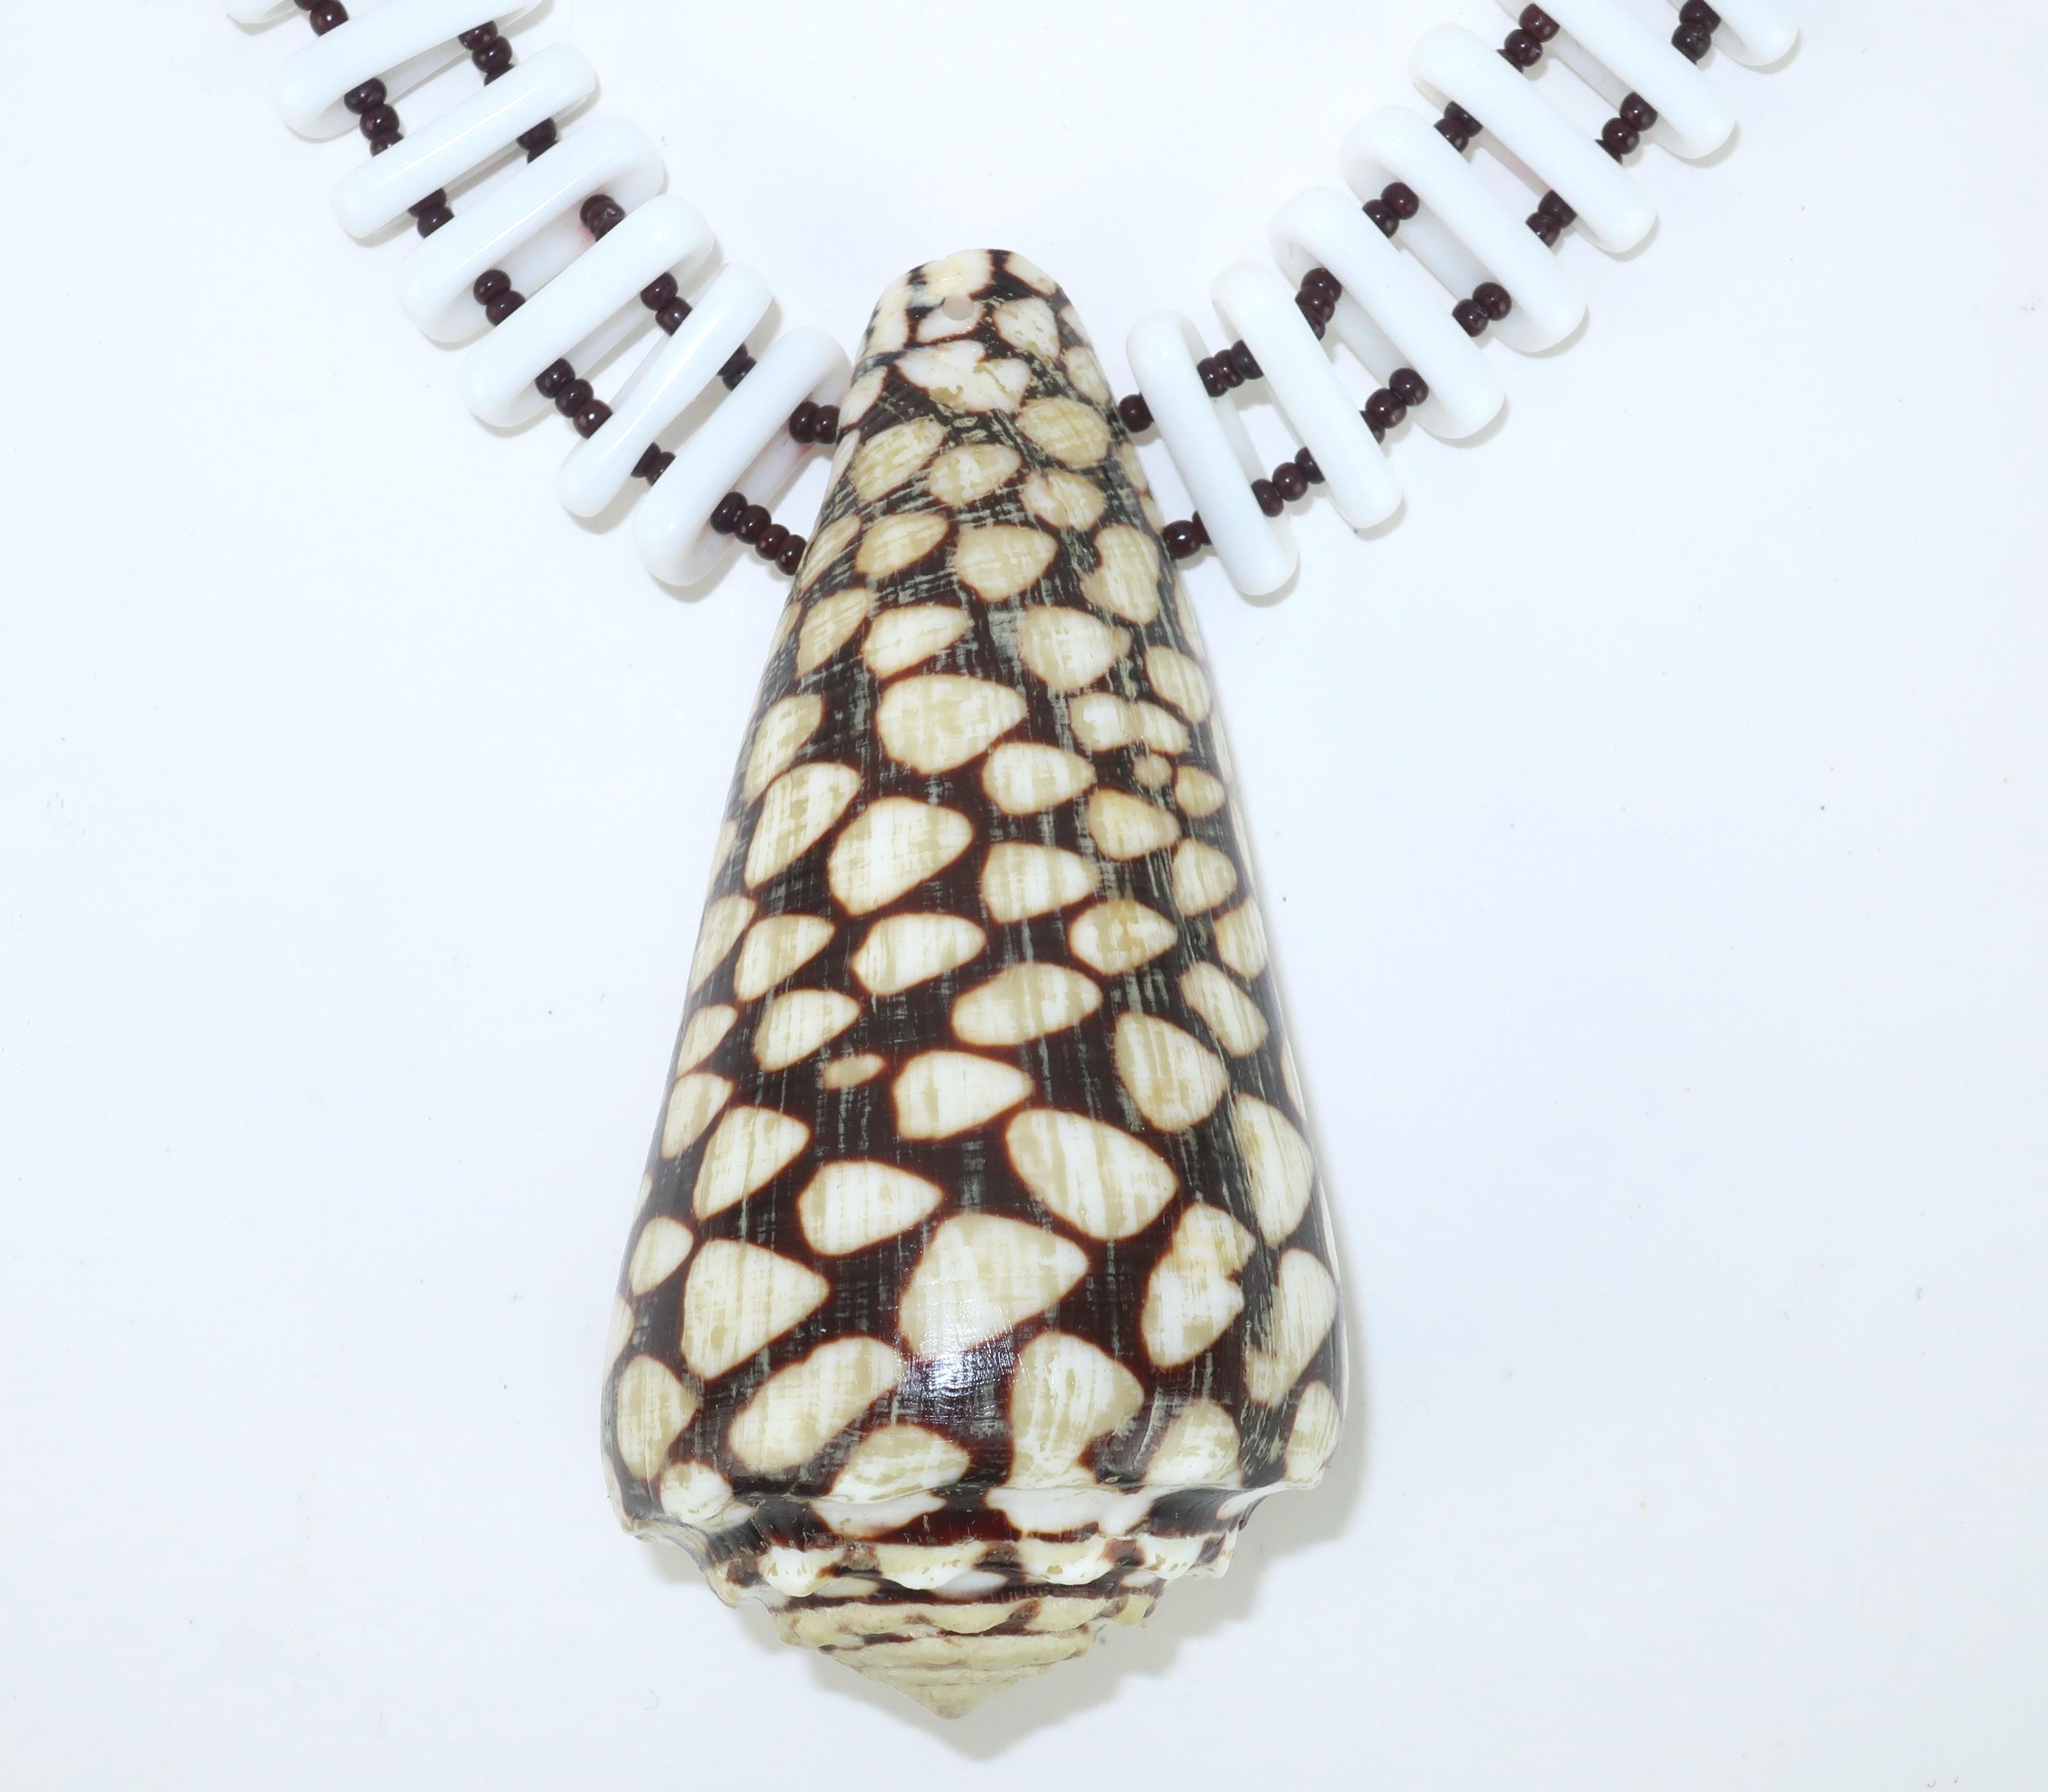 Dramatique dans sa simplicité, ce collier du milieu du siècle de Miriam Haskell combine un pendentif en forme de cône de coquillage tacheté avec des perles de verre blanc en forme de capsule, espacées de perles plus petites de couleur brun foncé